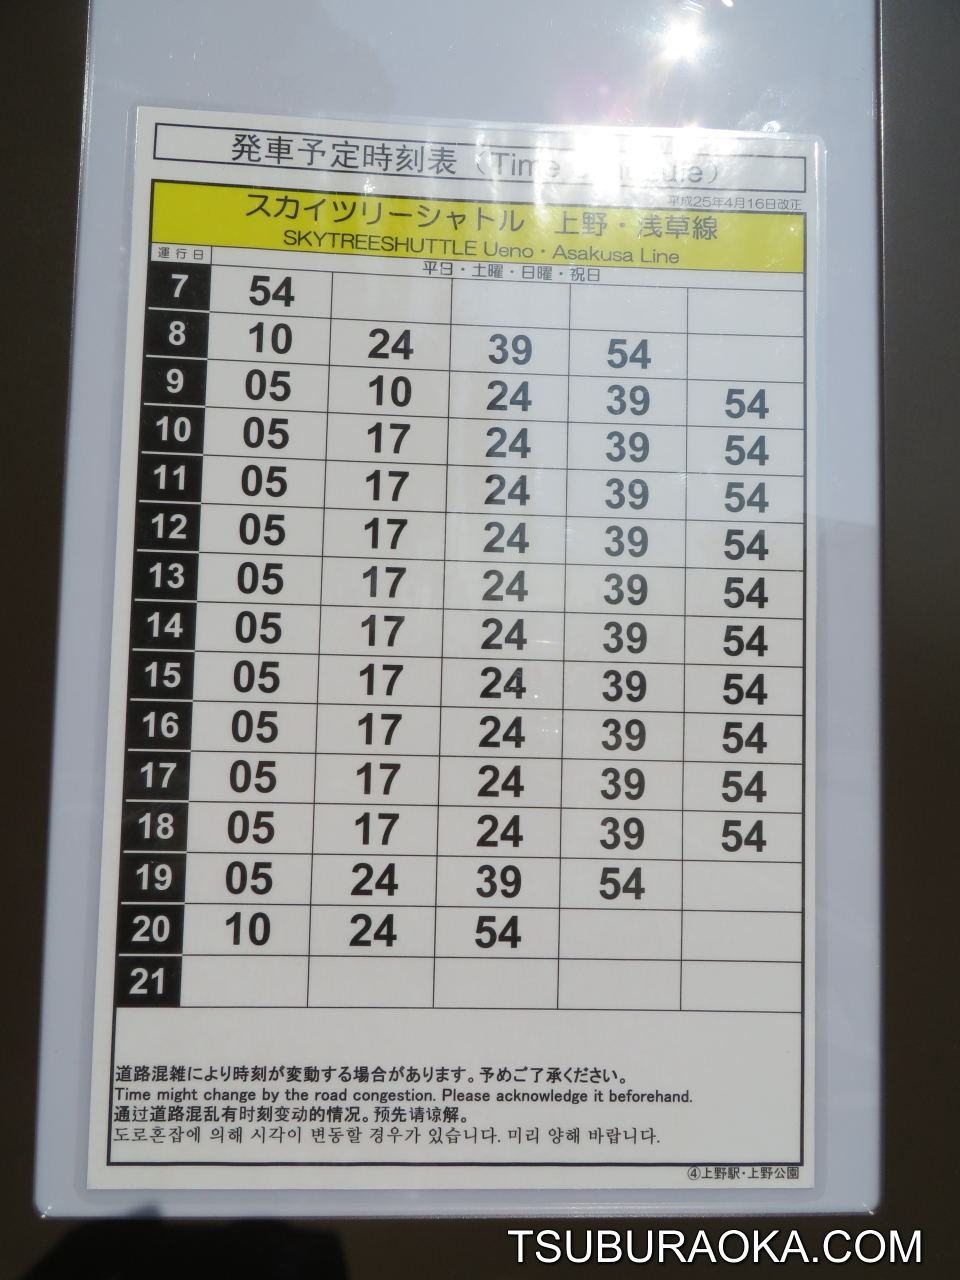 上野からスカイツリーに行くには このバス停でバスに乗るのが一番早いんじゃないかな こだわり百貨店 Tsuburaoka Com